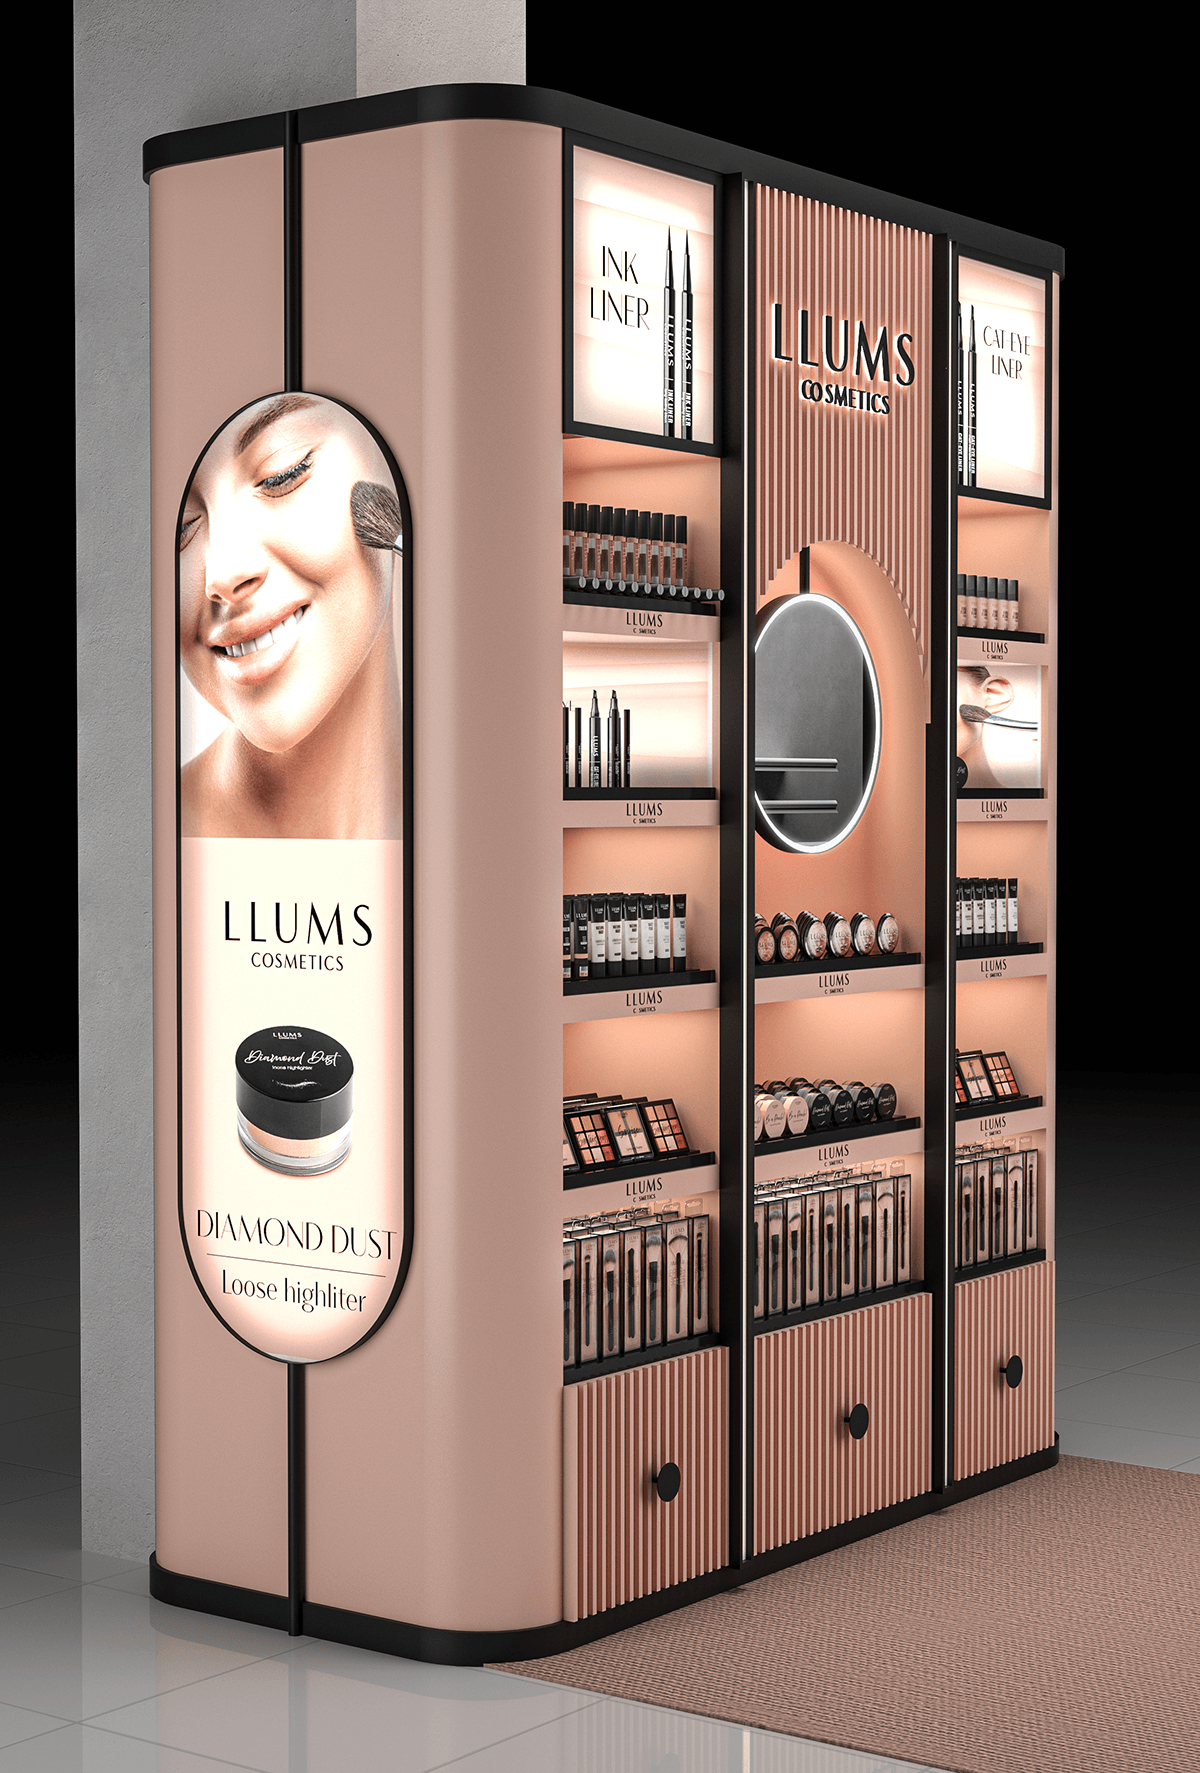 cosmetics beauty skincare makeup posm design Display Shelf bolpacic llums